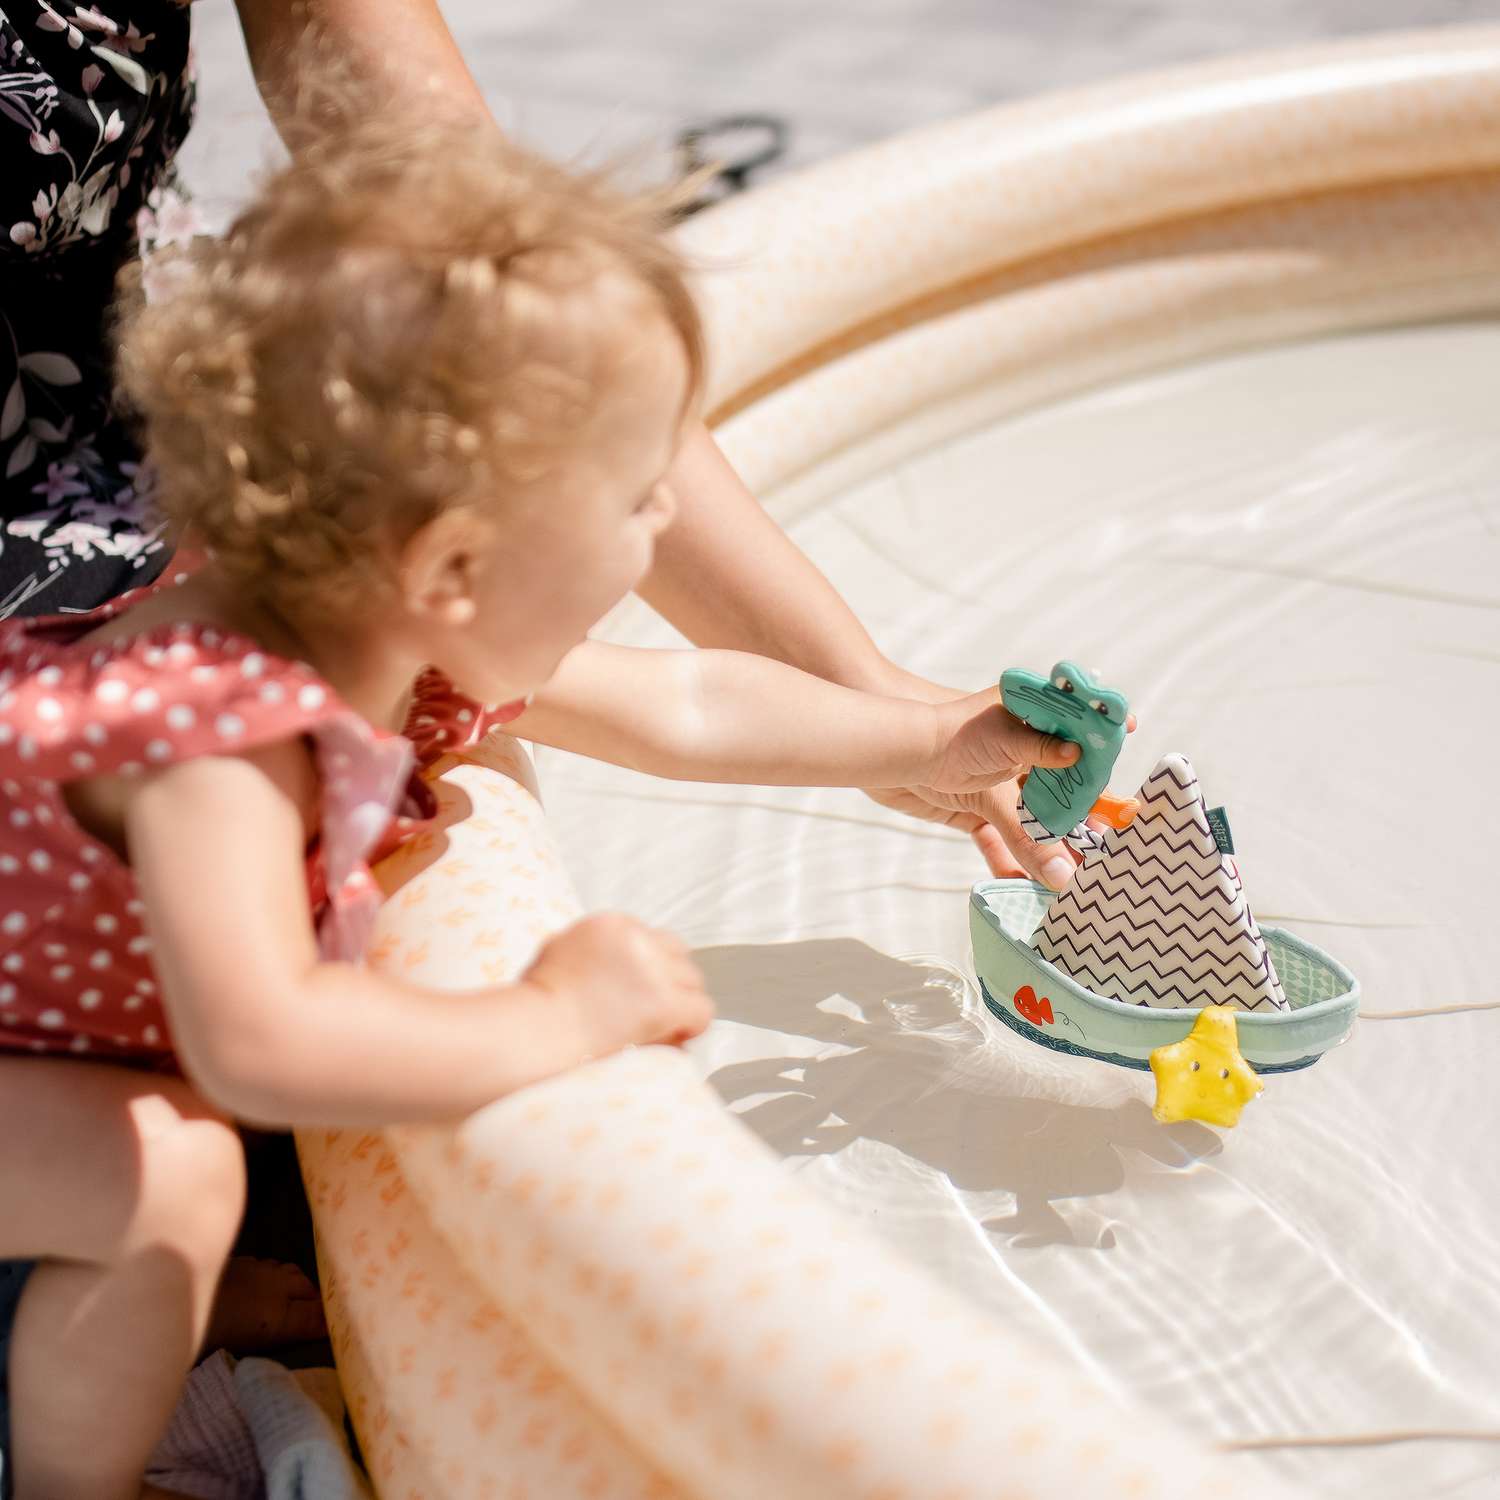 Игрушка для ванны FEHN Лодка и пальчиковая игрушка Крокодил - фото 5